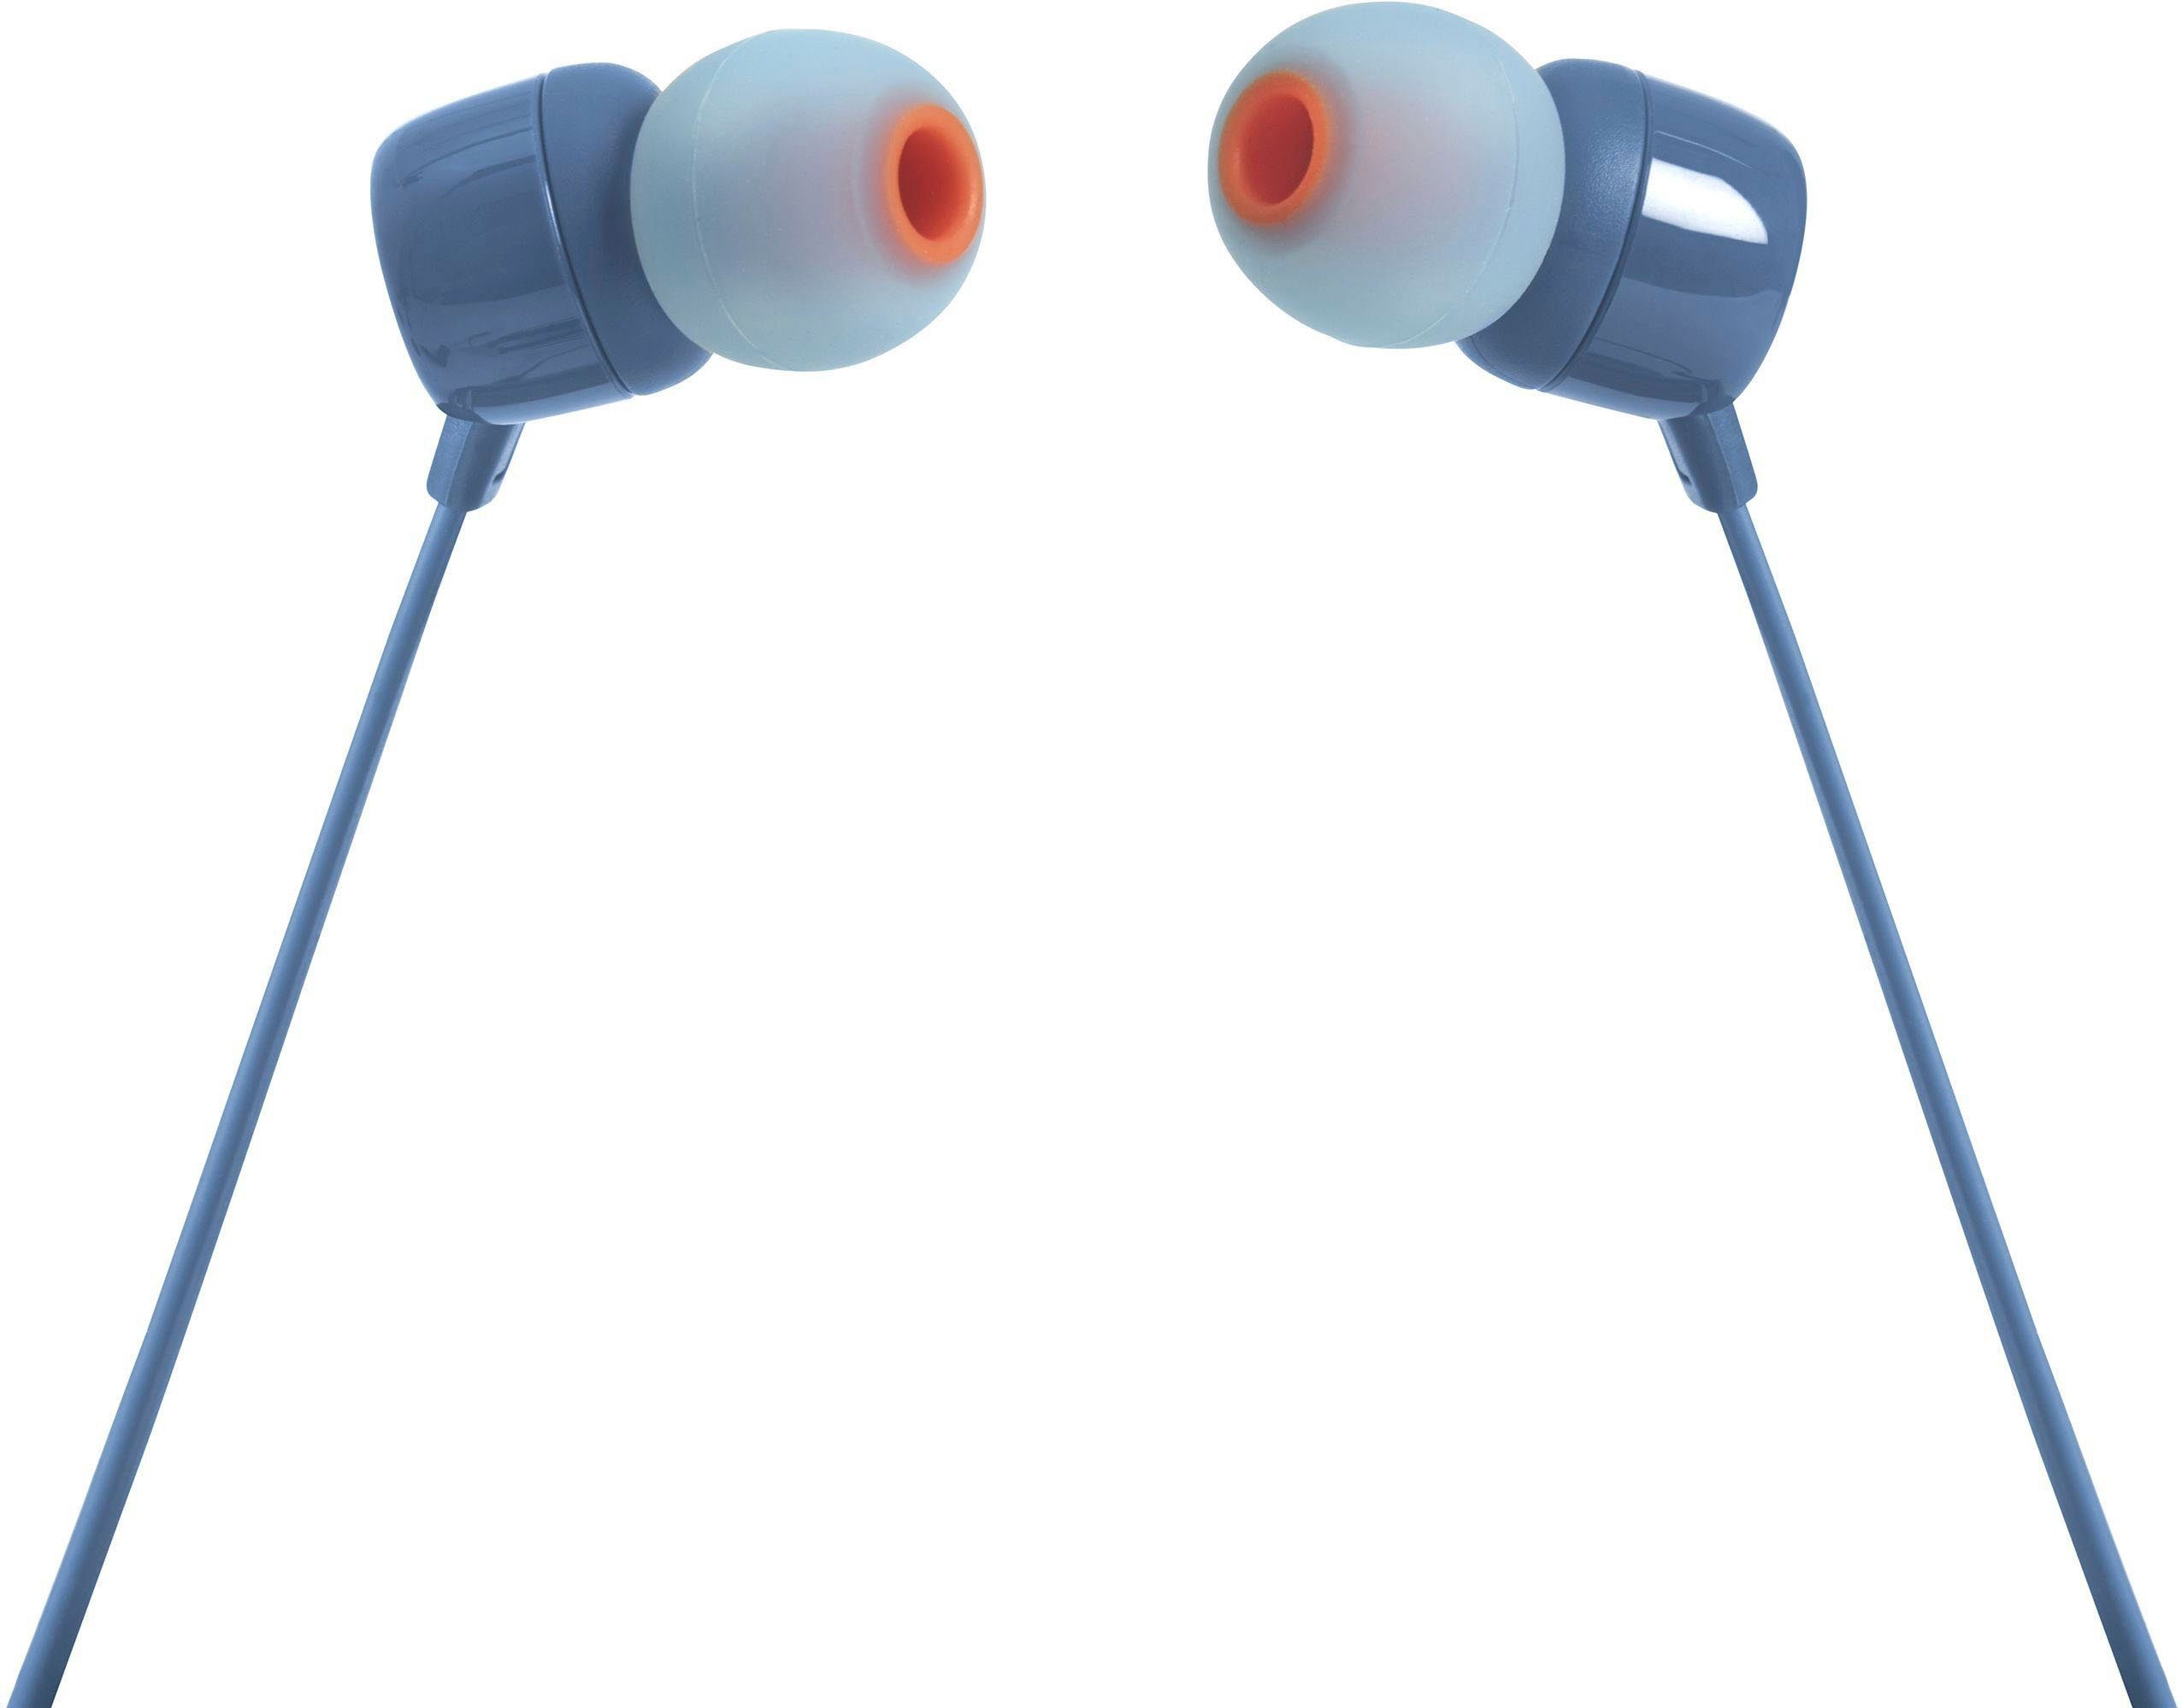 Kabel 1,1m Kopfhörer In-Ear 3,5mm Klinkenstecker weiß JBL Harman T110 